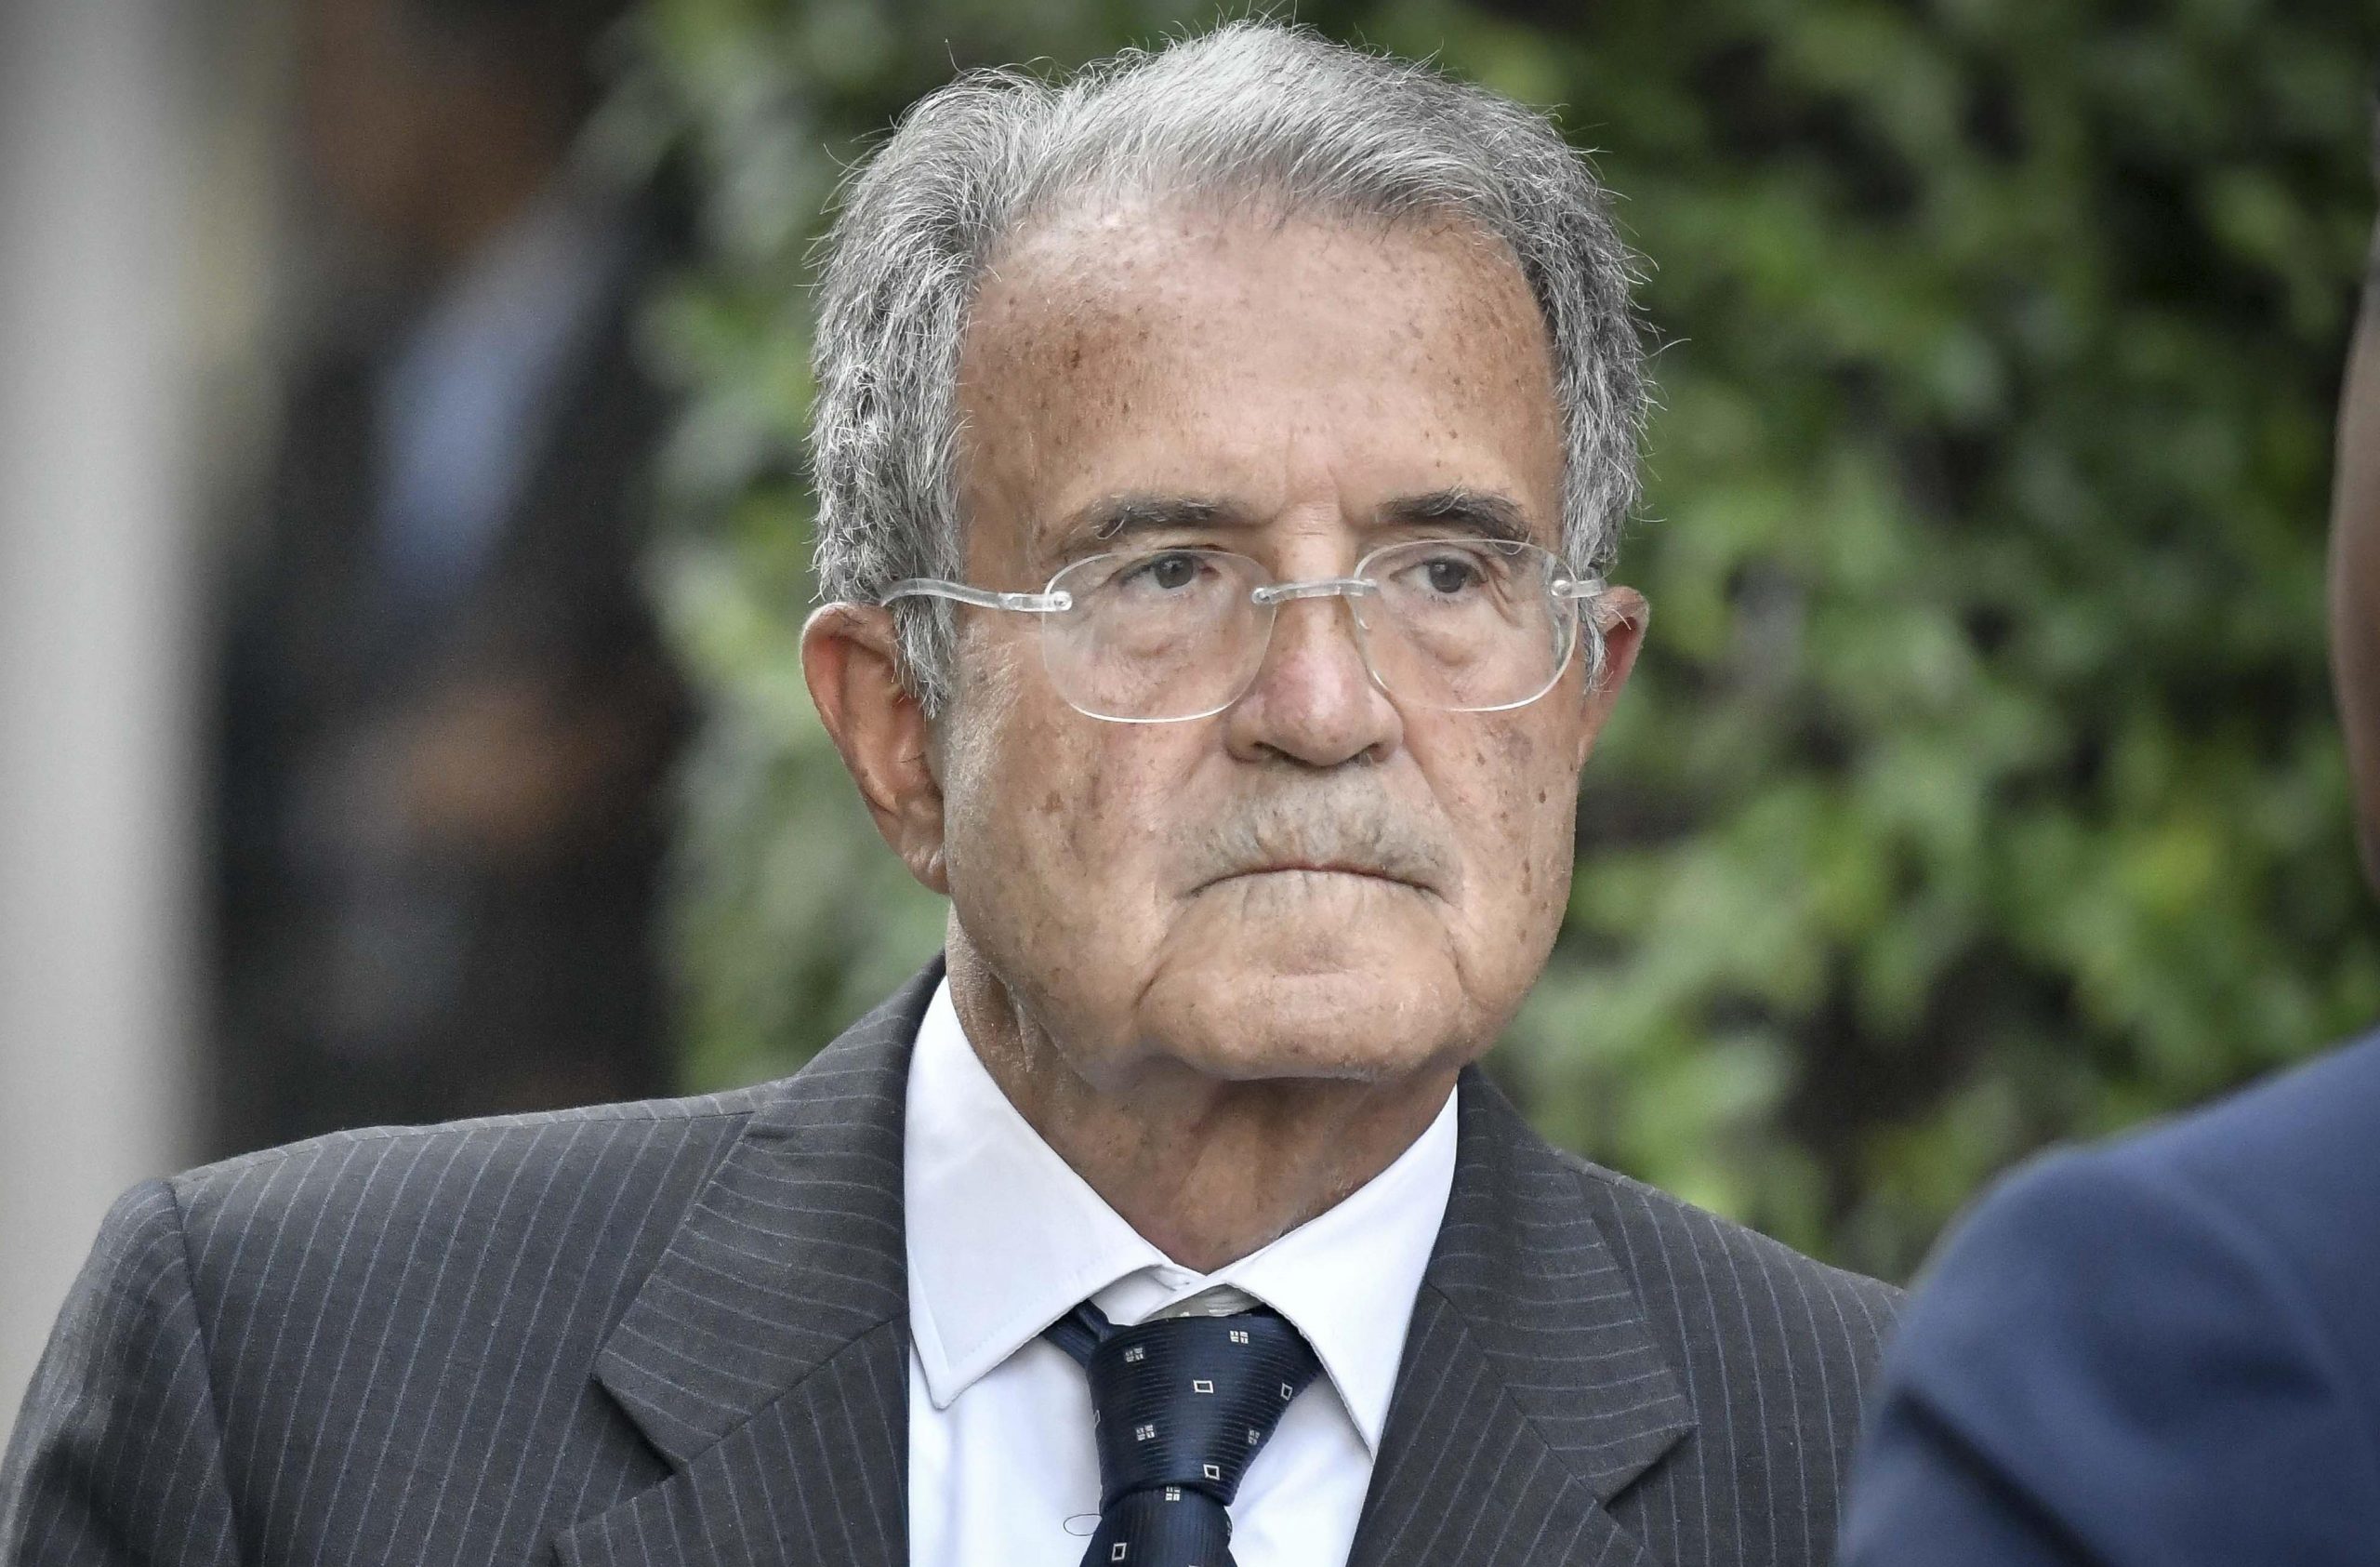 Salario minimo, Prodi: "Se l'Italia non lo vota è una vergogna"